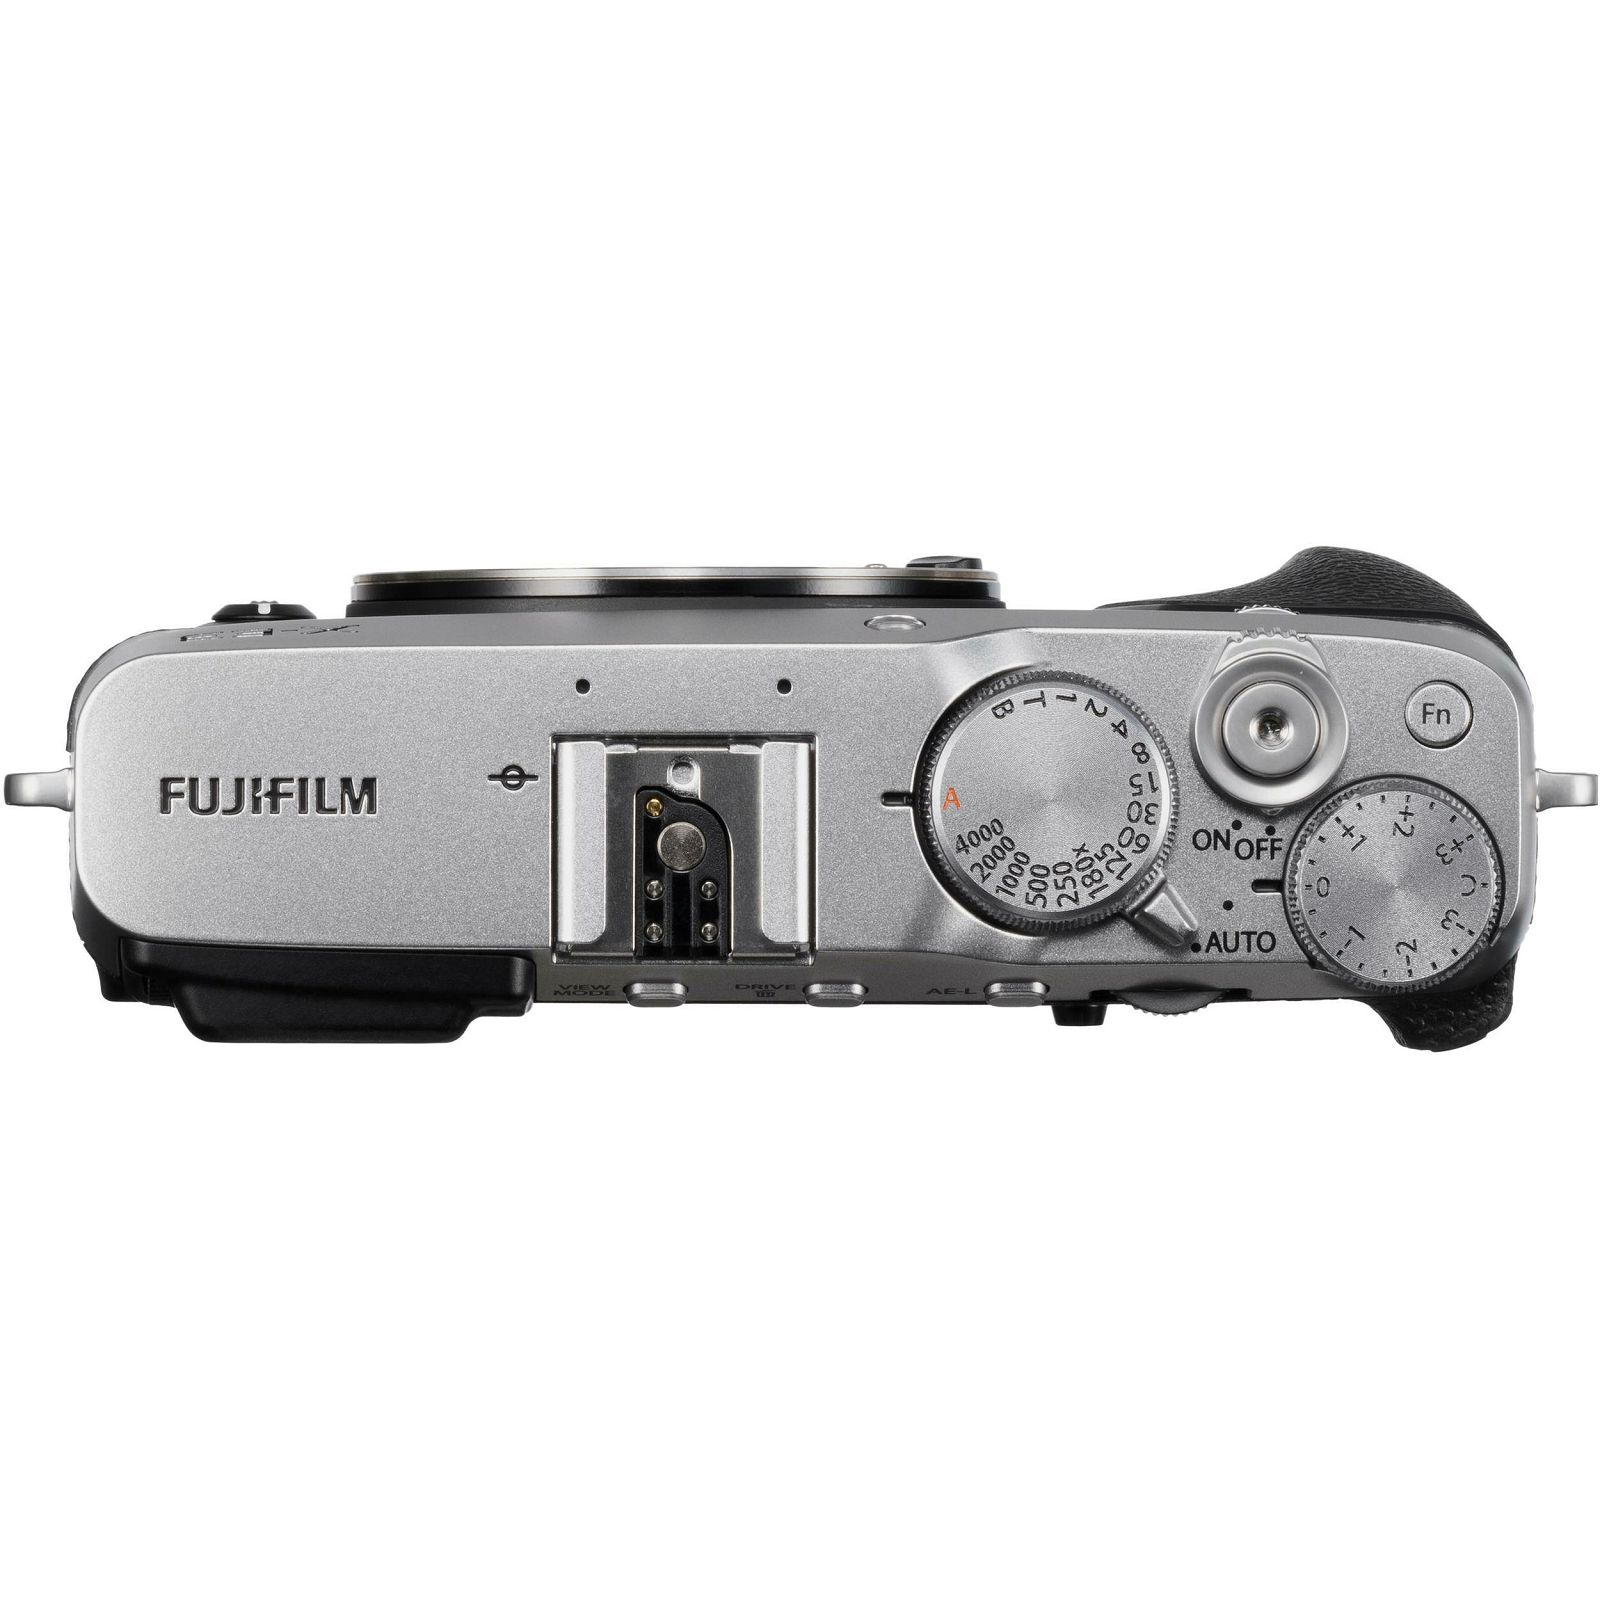 Fujifilm X-E3 Body Silver srebreni Digitalni fotoaparat tijelo Mirrorless camera Fuji Finepix XE3 24Mpx